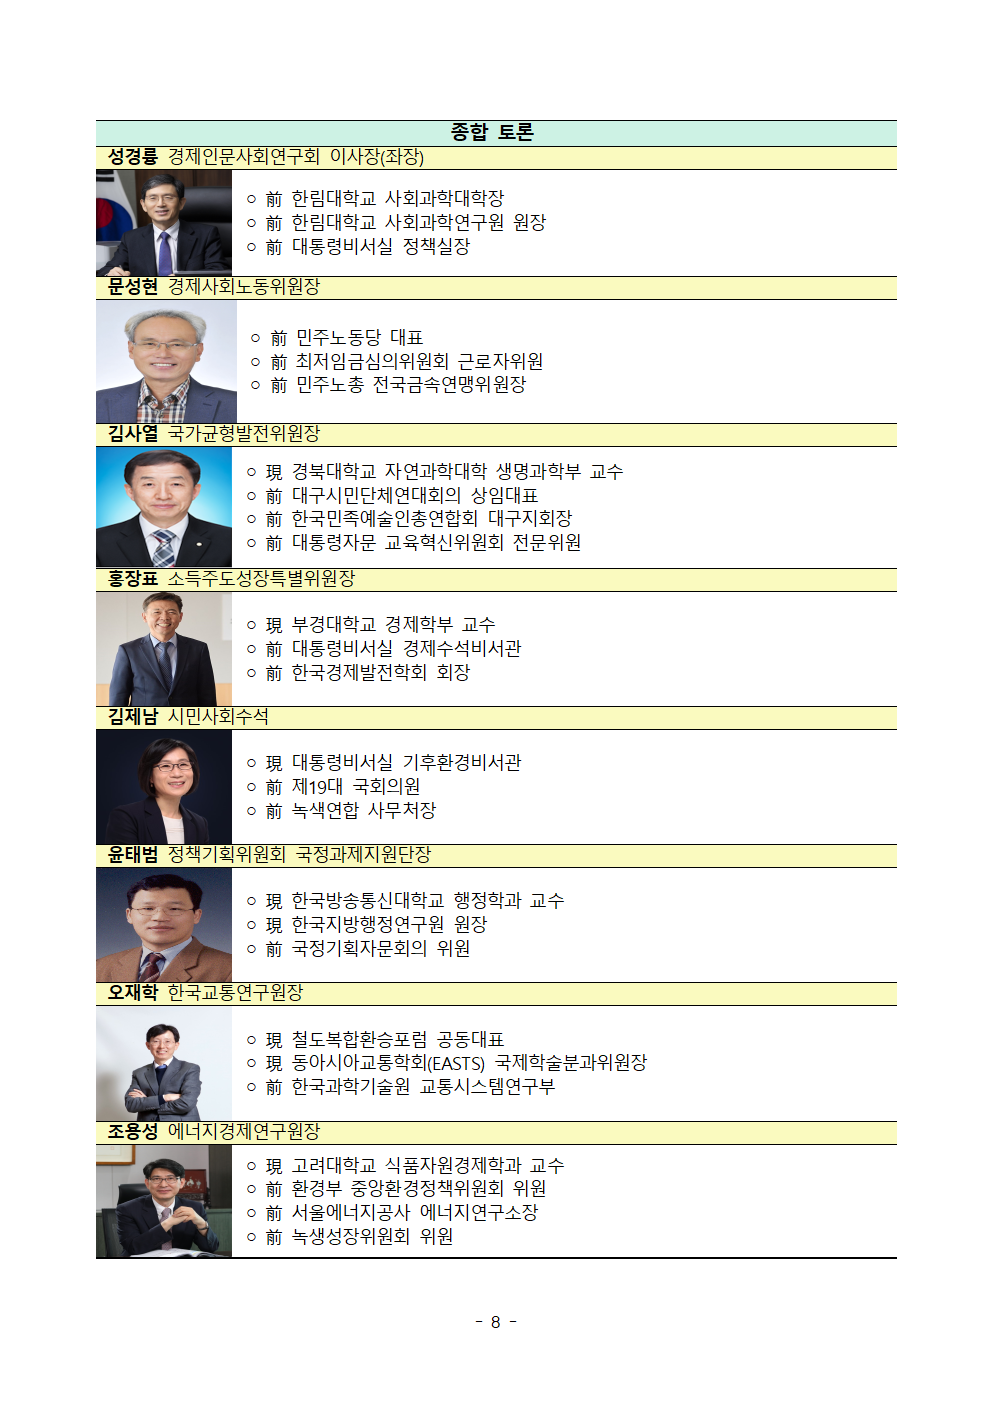 첨부파일참고 : [보도자료] Inclusive Korea 2020 국제컨퍼런스 개최.hwp